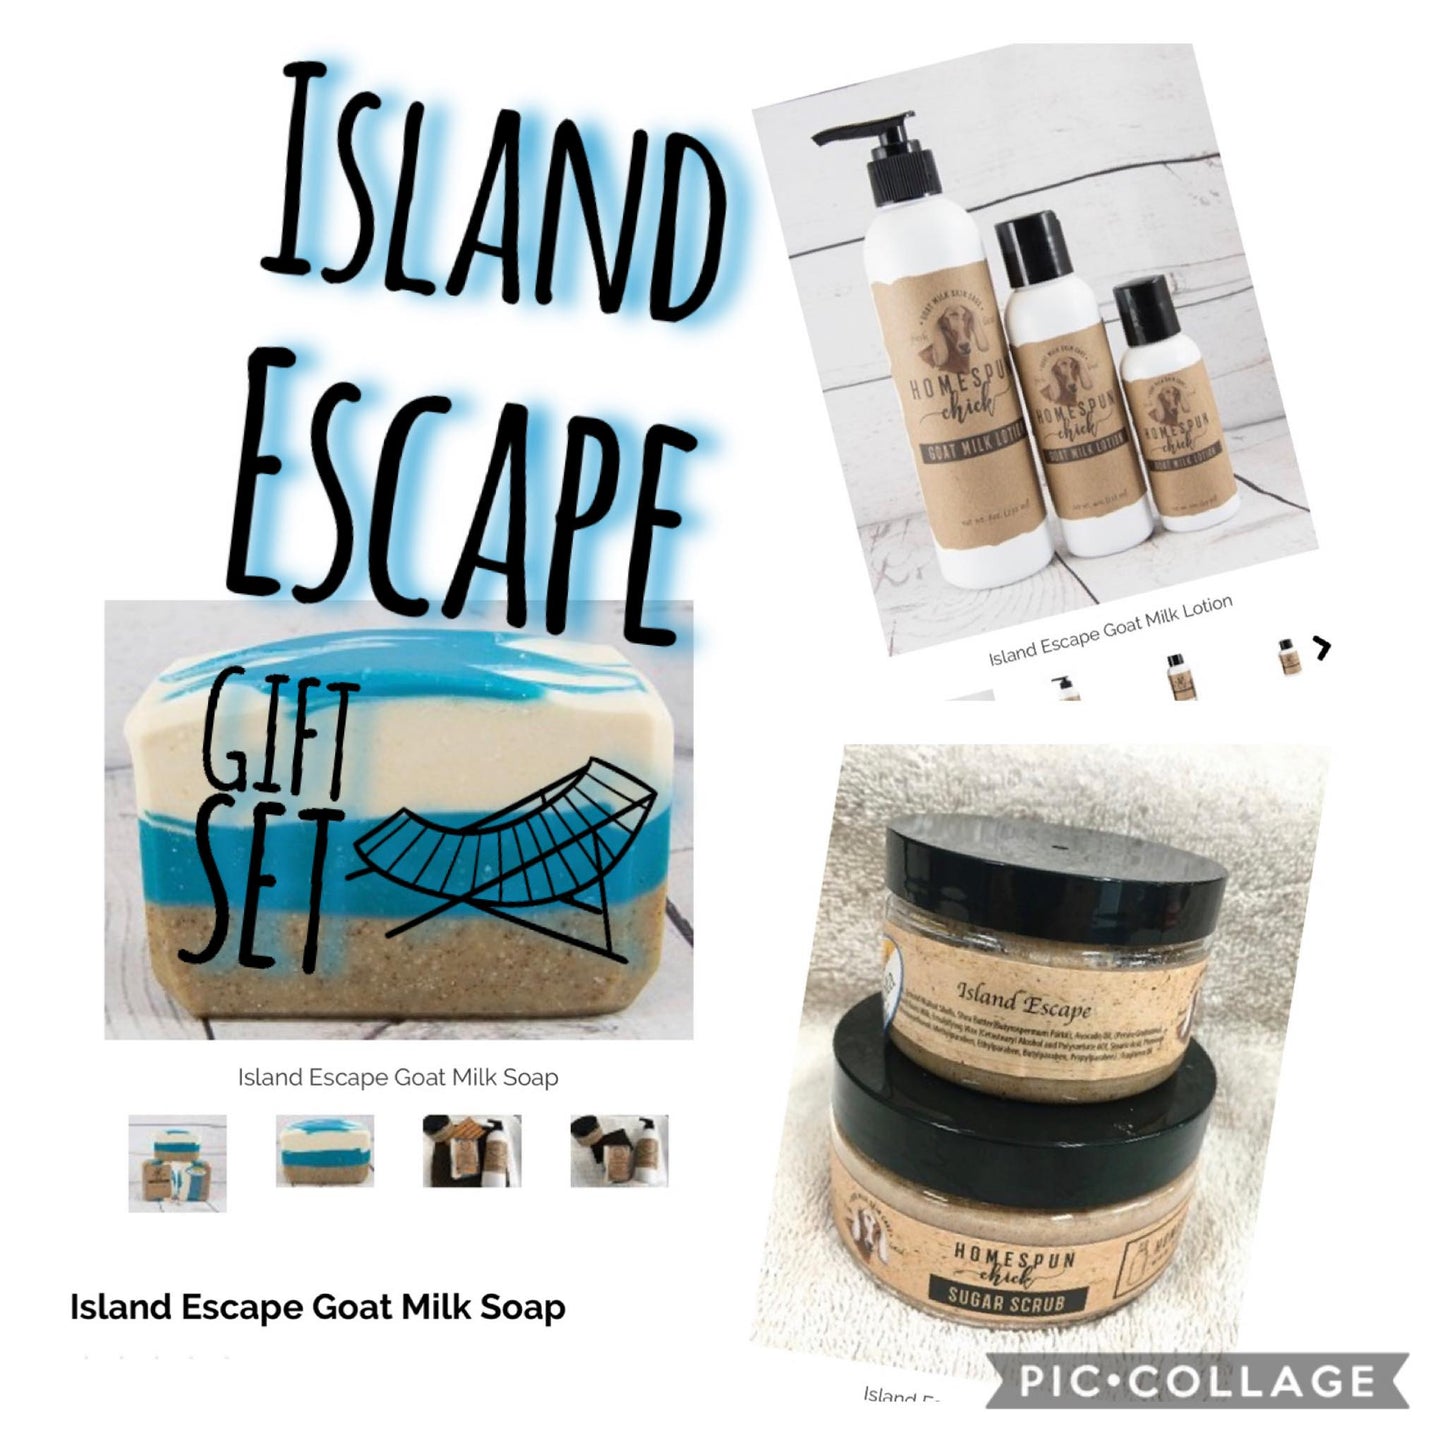 Island Escape Goat Milk Soap